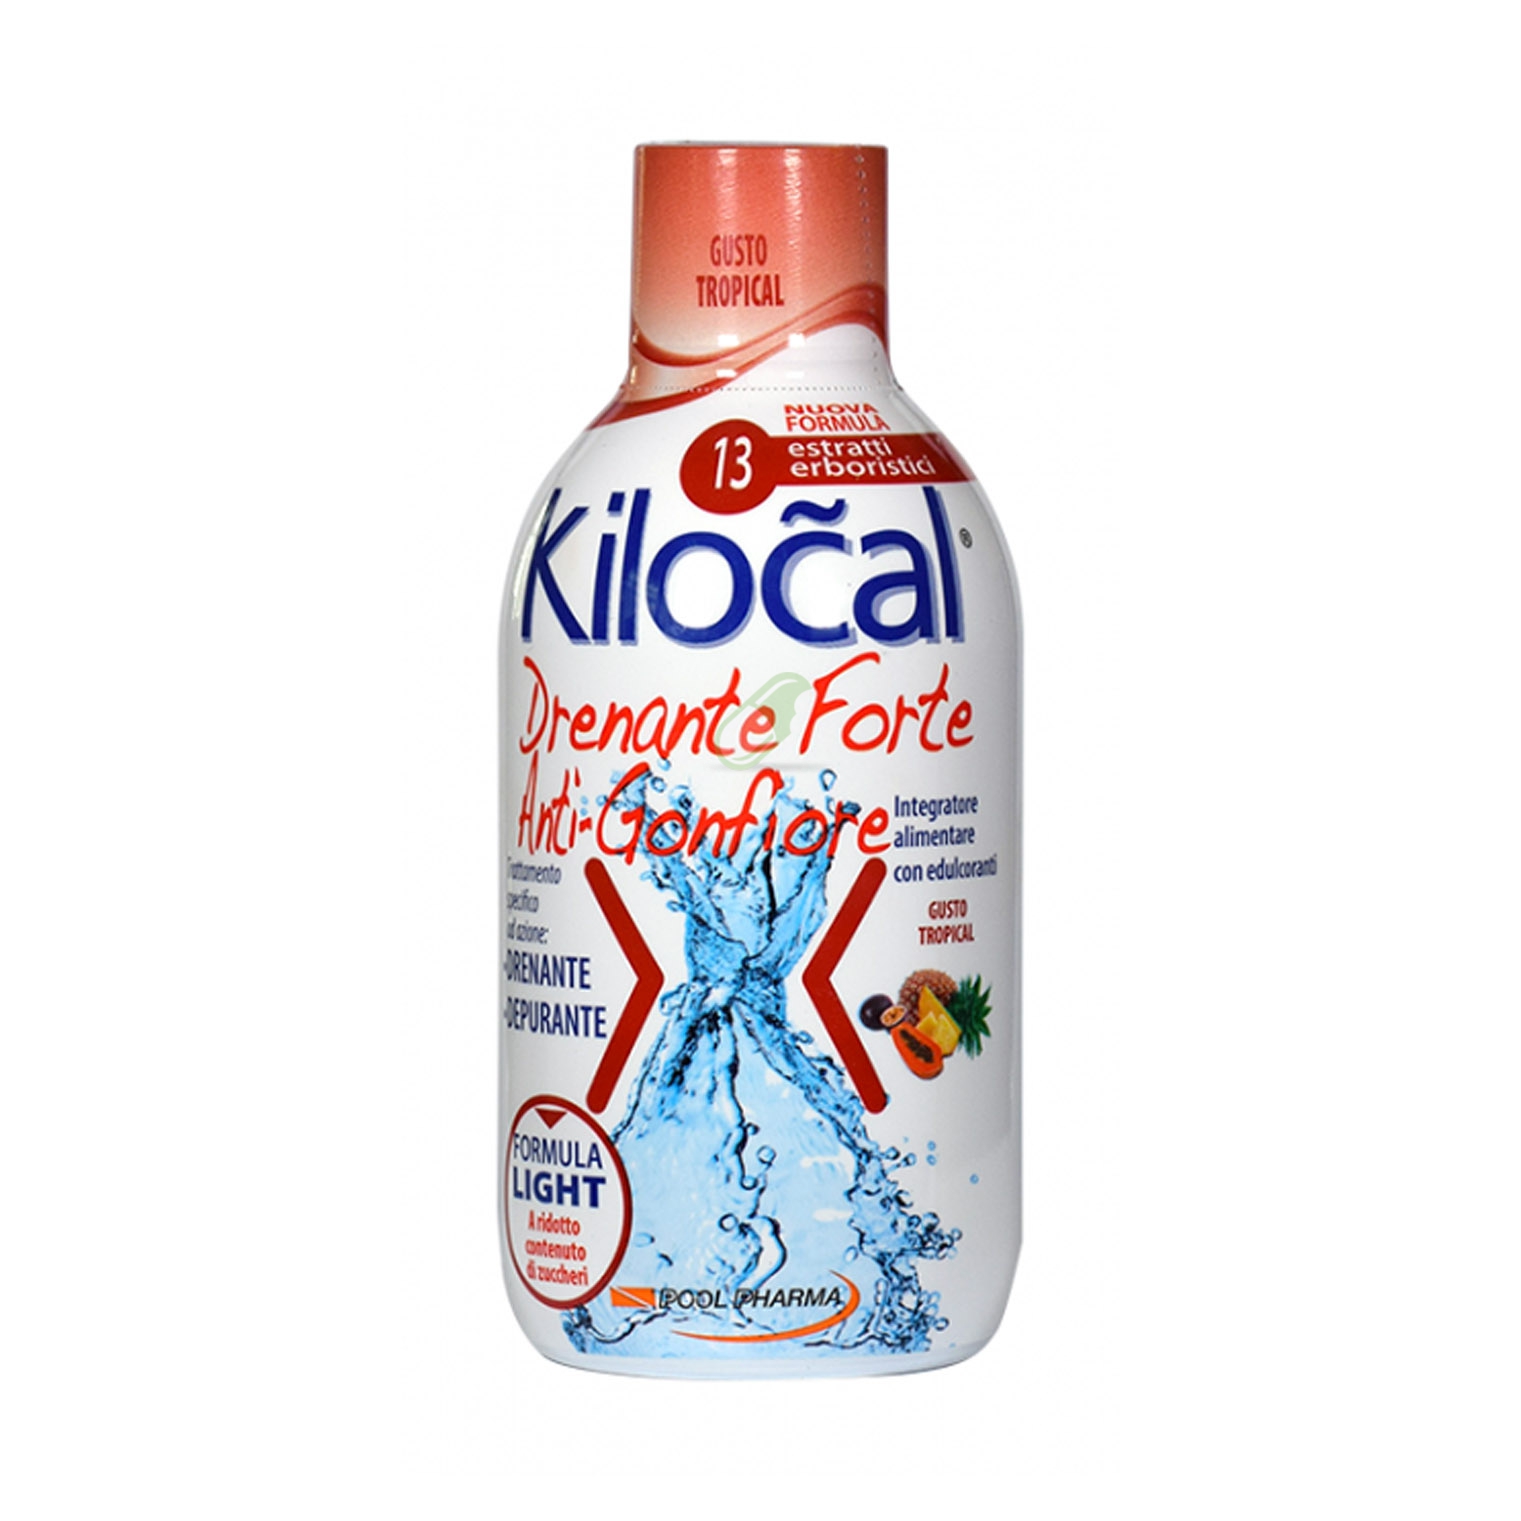 Kilocal Linea Drenante Forte Integratore Alimentare Anti Gonfiore 500 ml Tropic